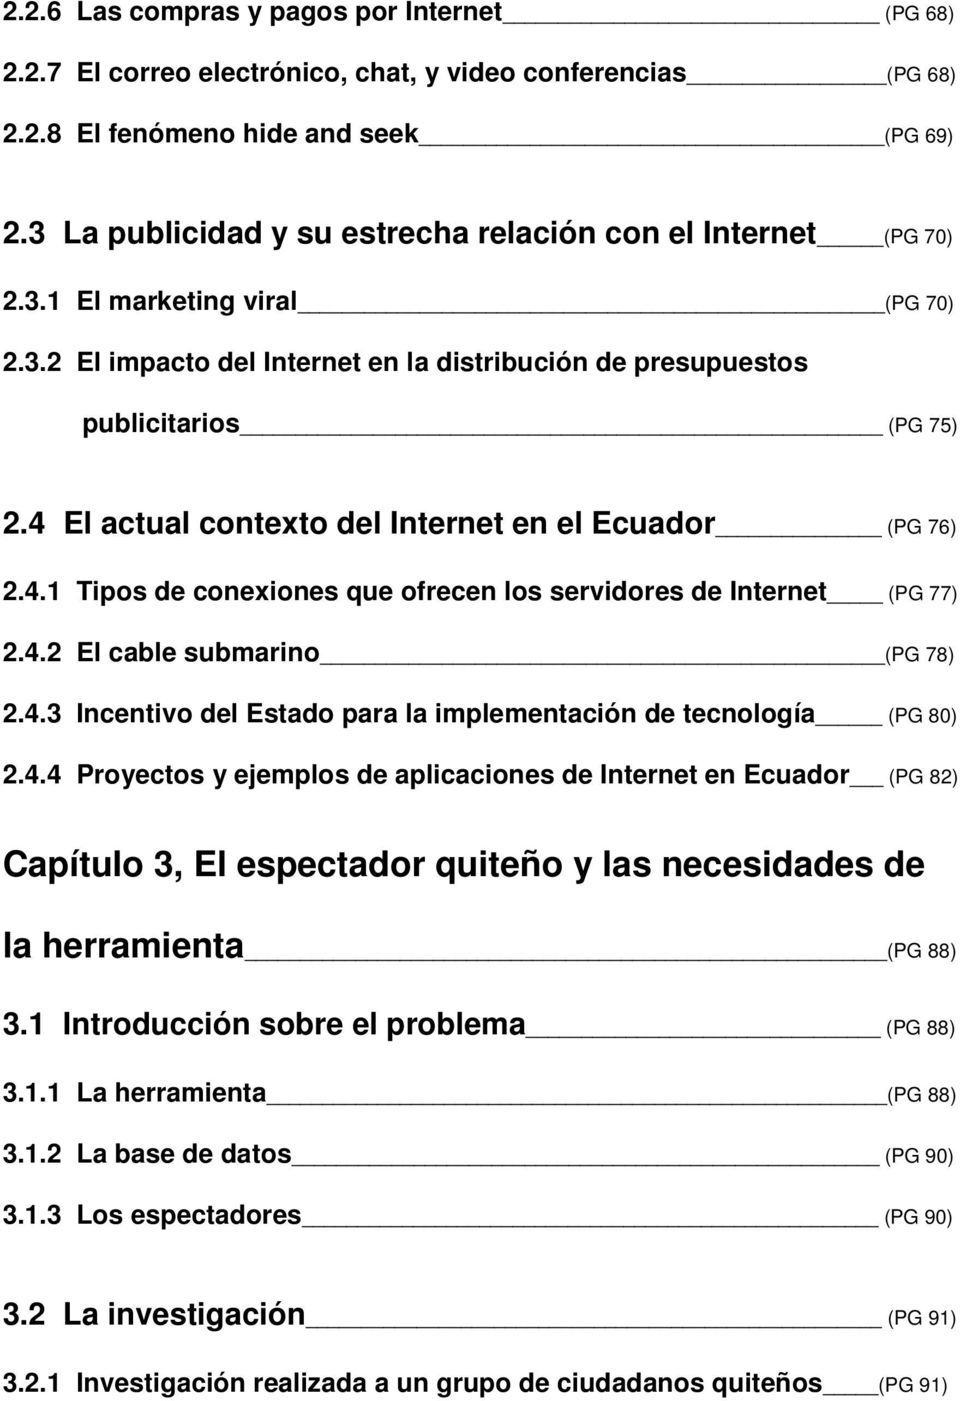 4 El actual contexto del Internet en el Ecuador (PG 76) 2.4.1 Tipos de conexiones que ofrecen los servidores de Internet (PG 77) 2.4.2 El cable submarino (PG 78) 2.4.3 Incentivo del Estado para la implementación de tecnología (PG 80) 2.